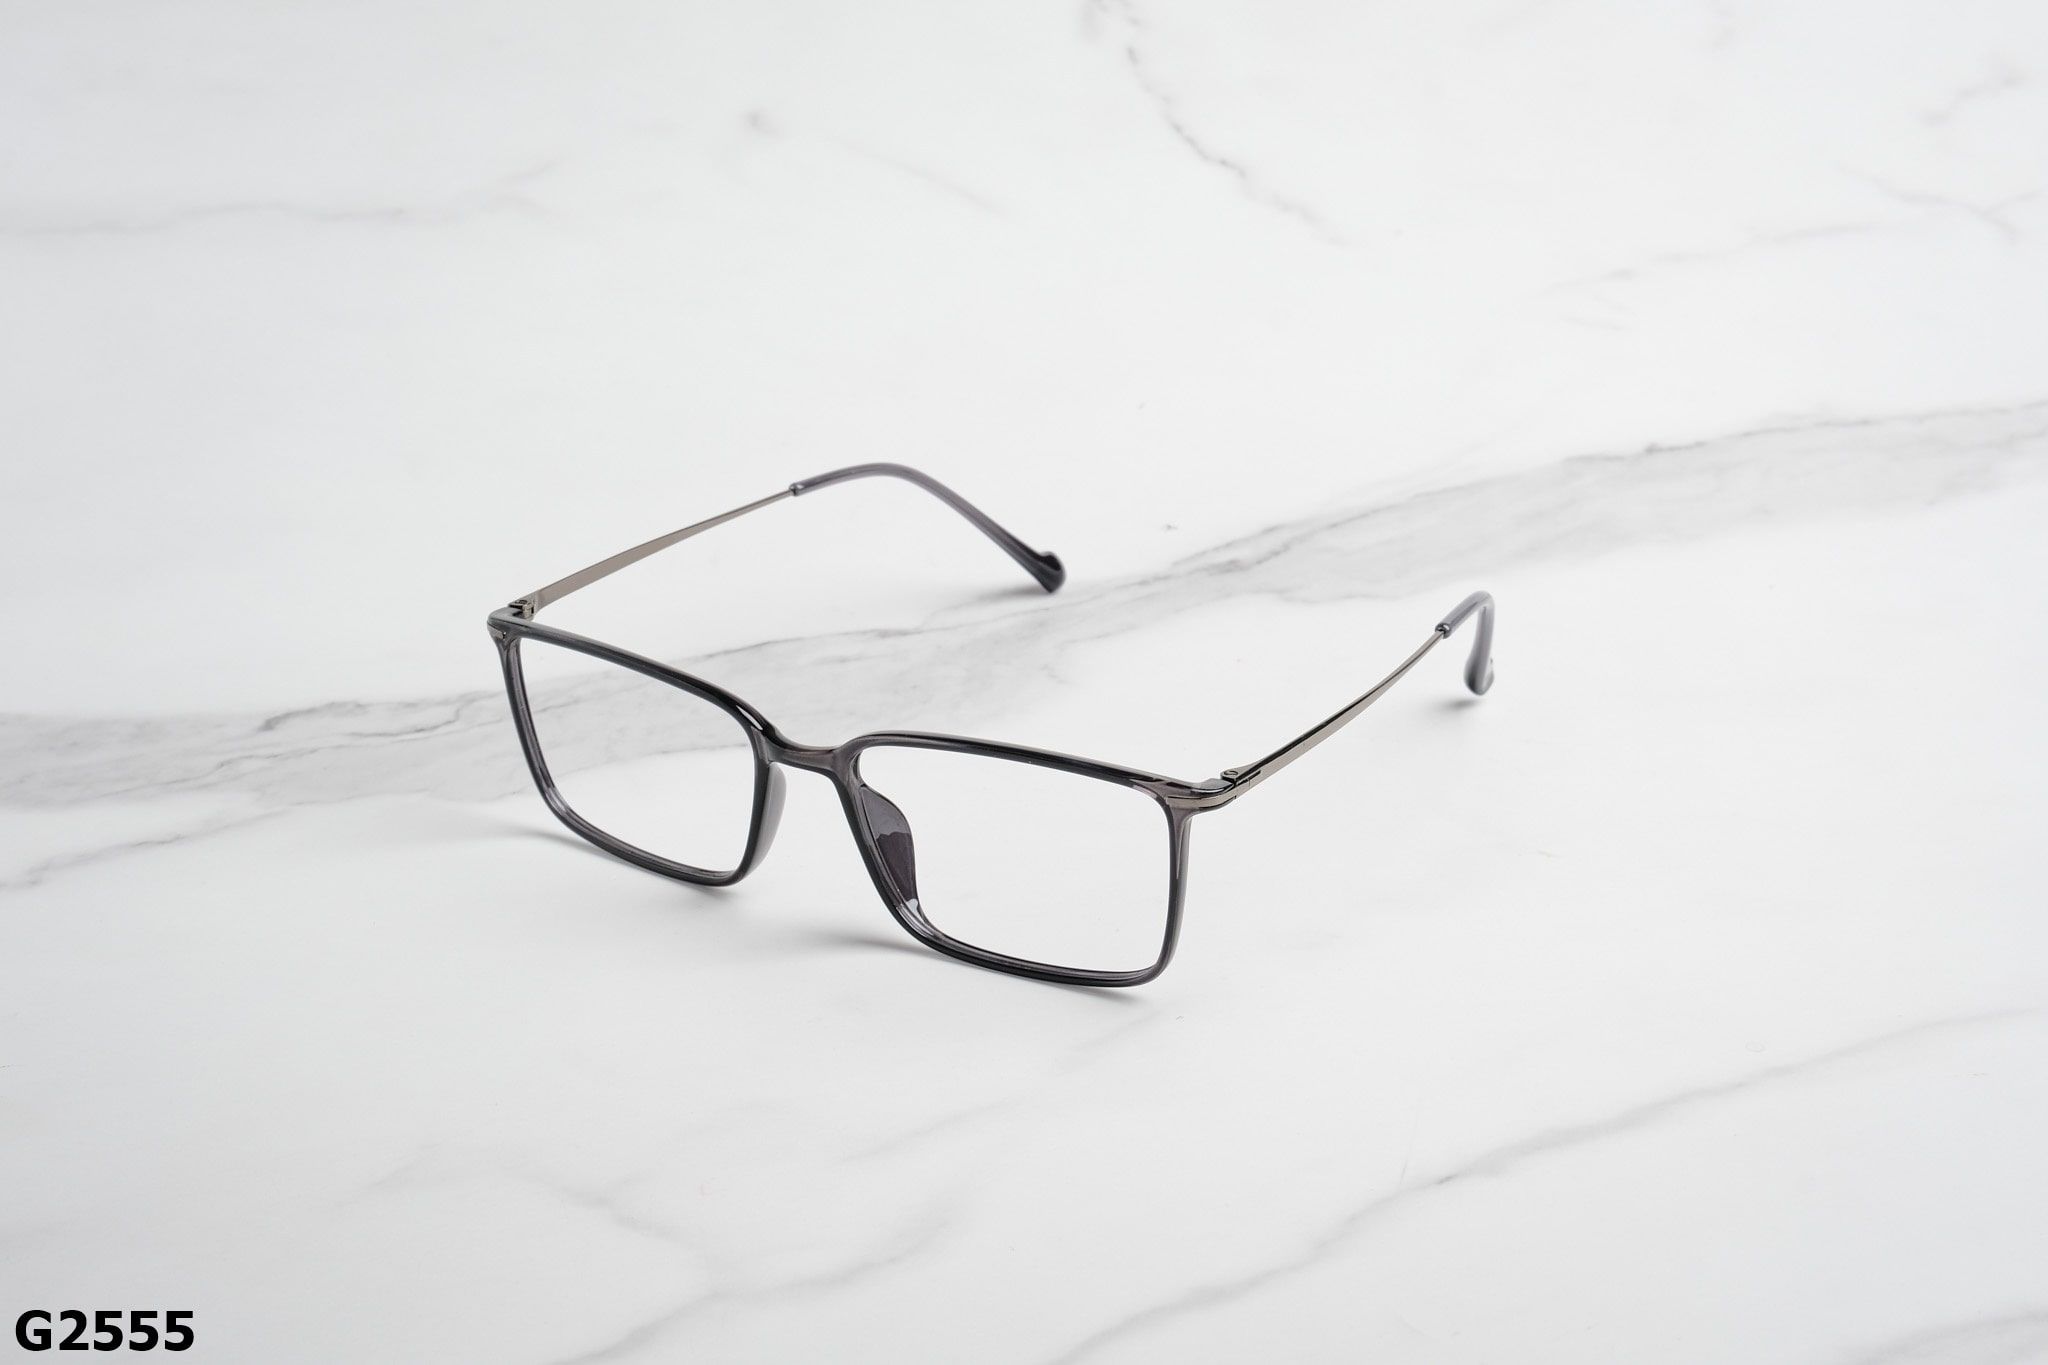  Rex-ton Eyewear - Glasses - G2555 